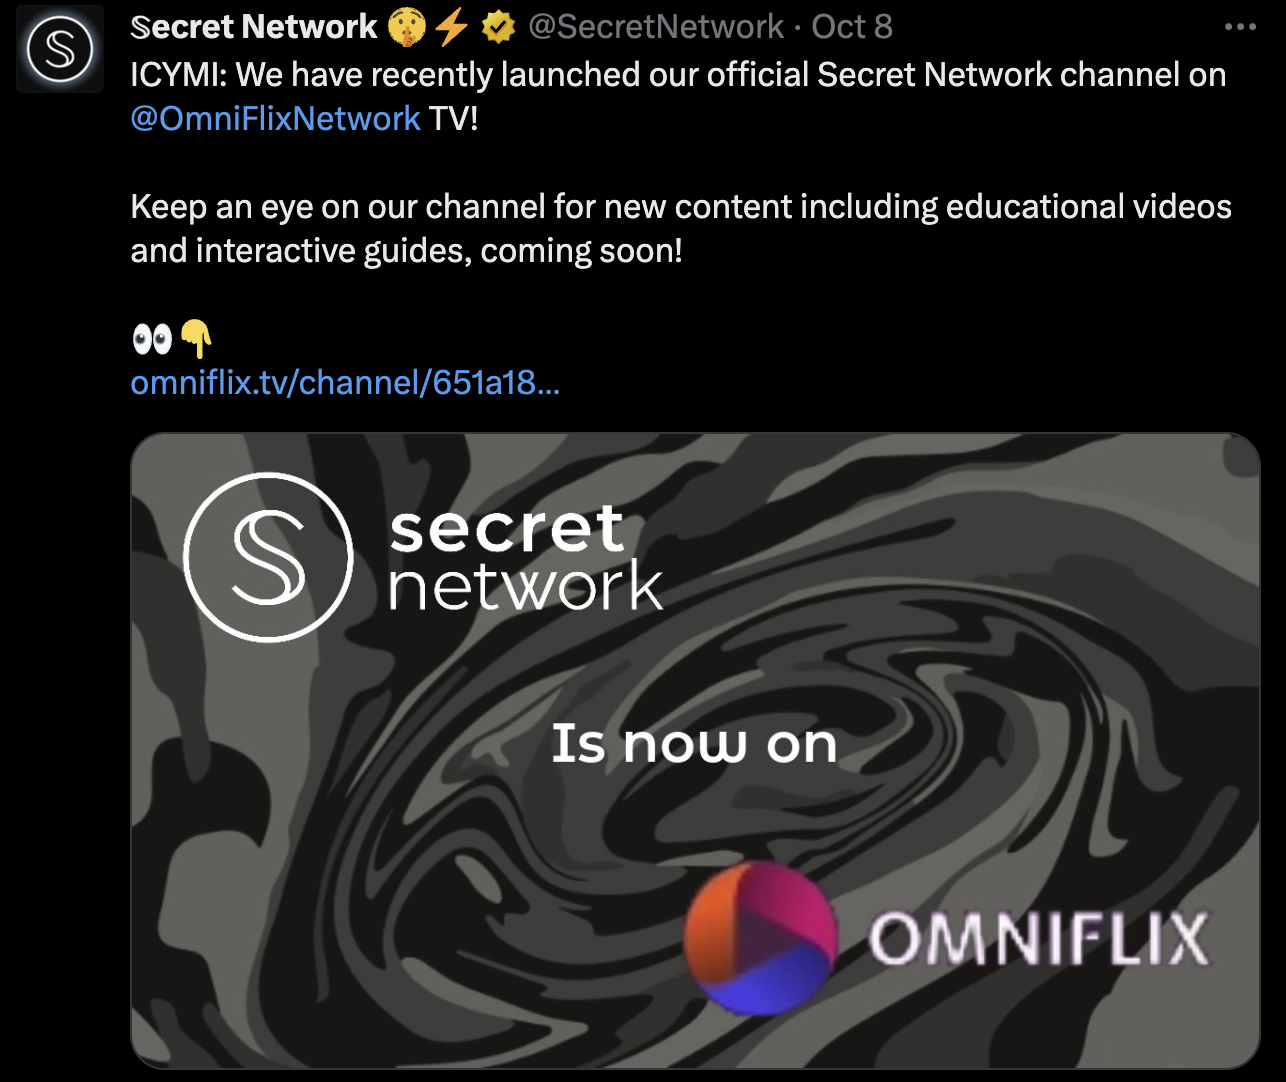 Secret Network on OmniFlix